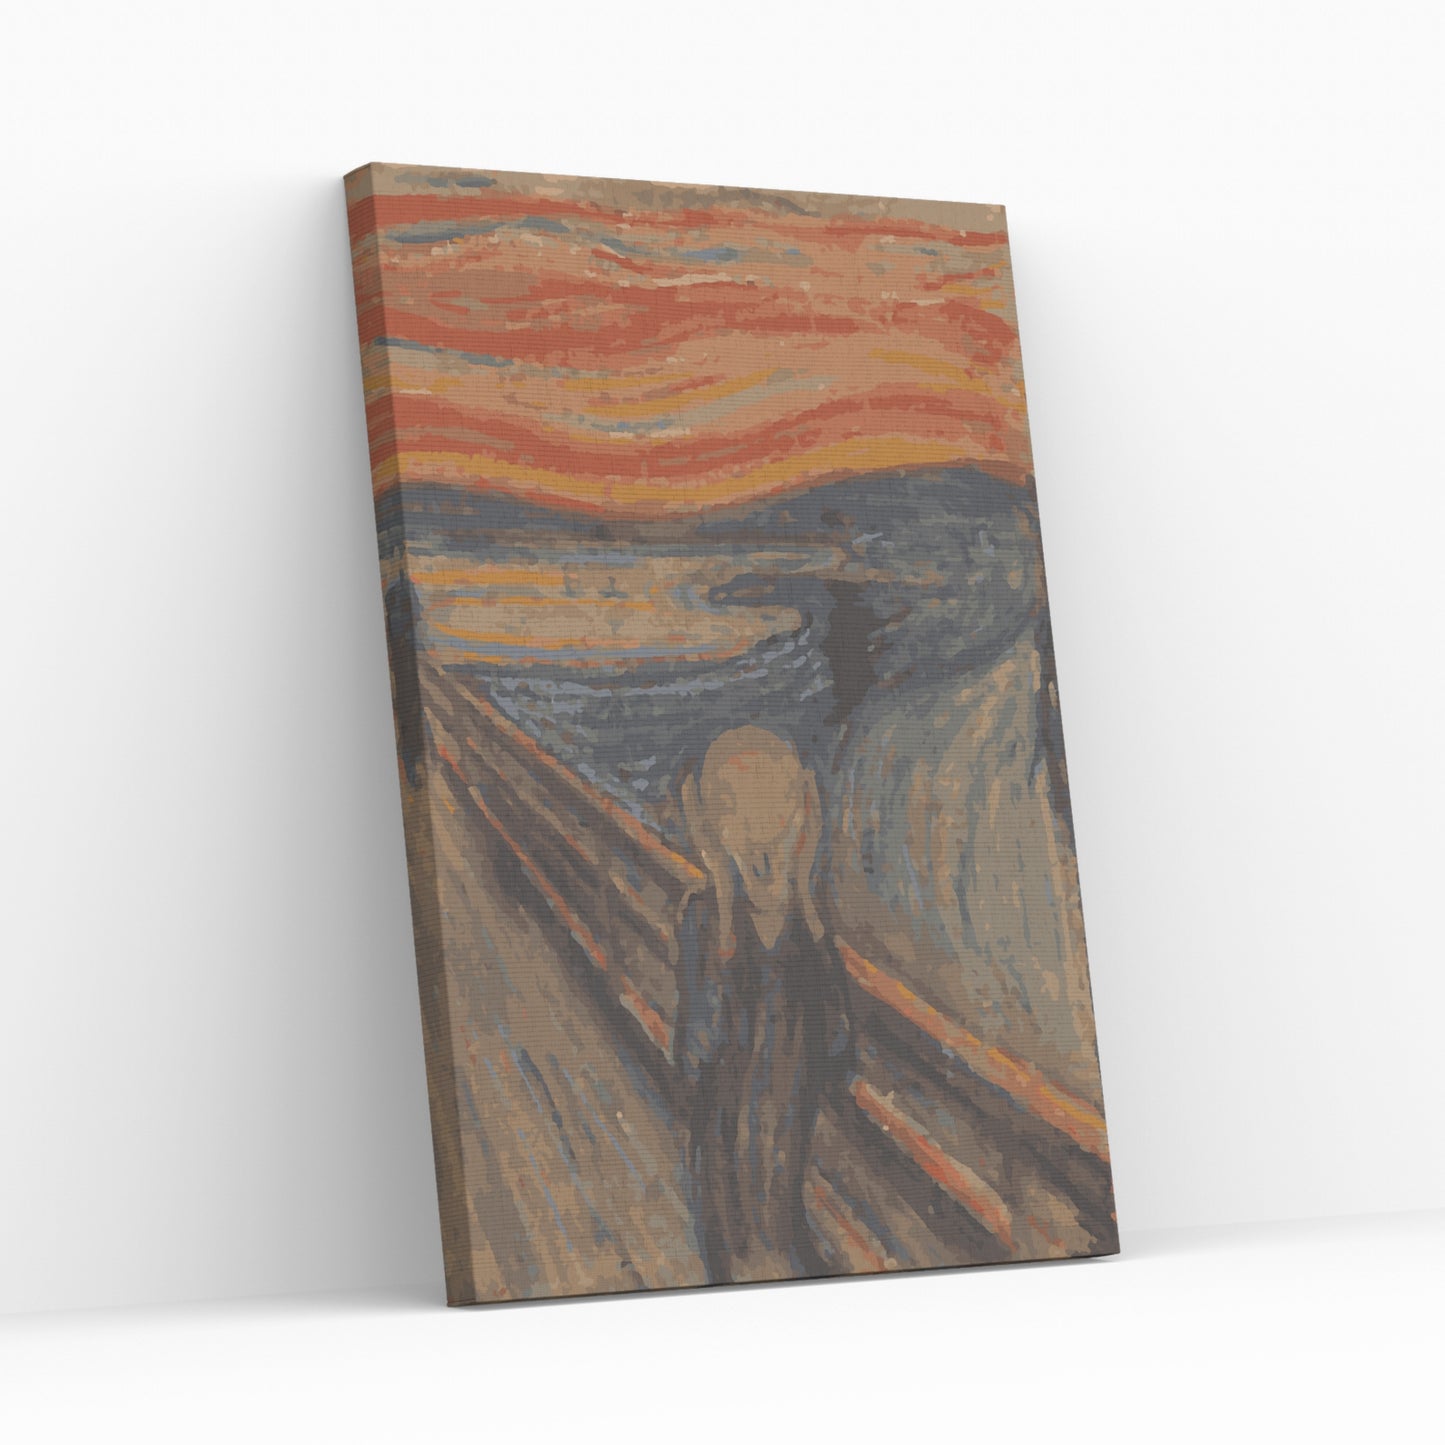 SKRIGET -Edvard Munch